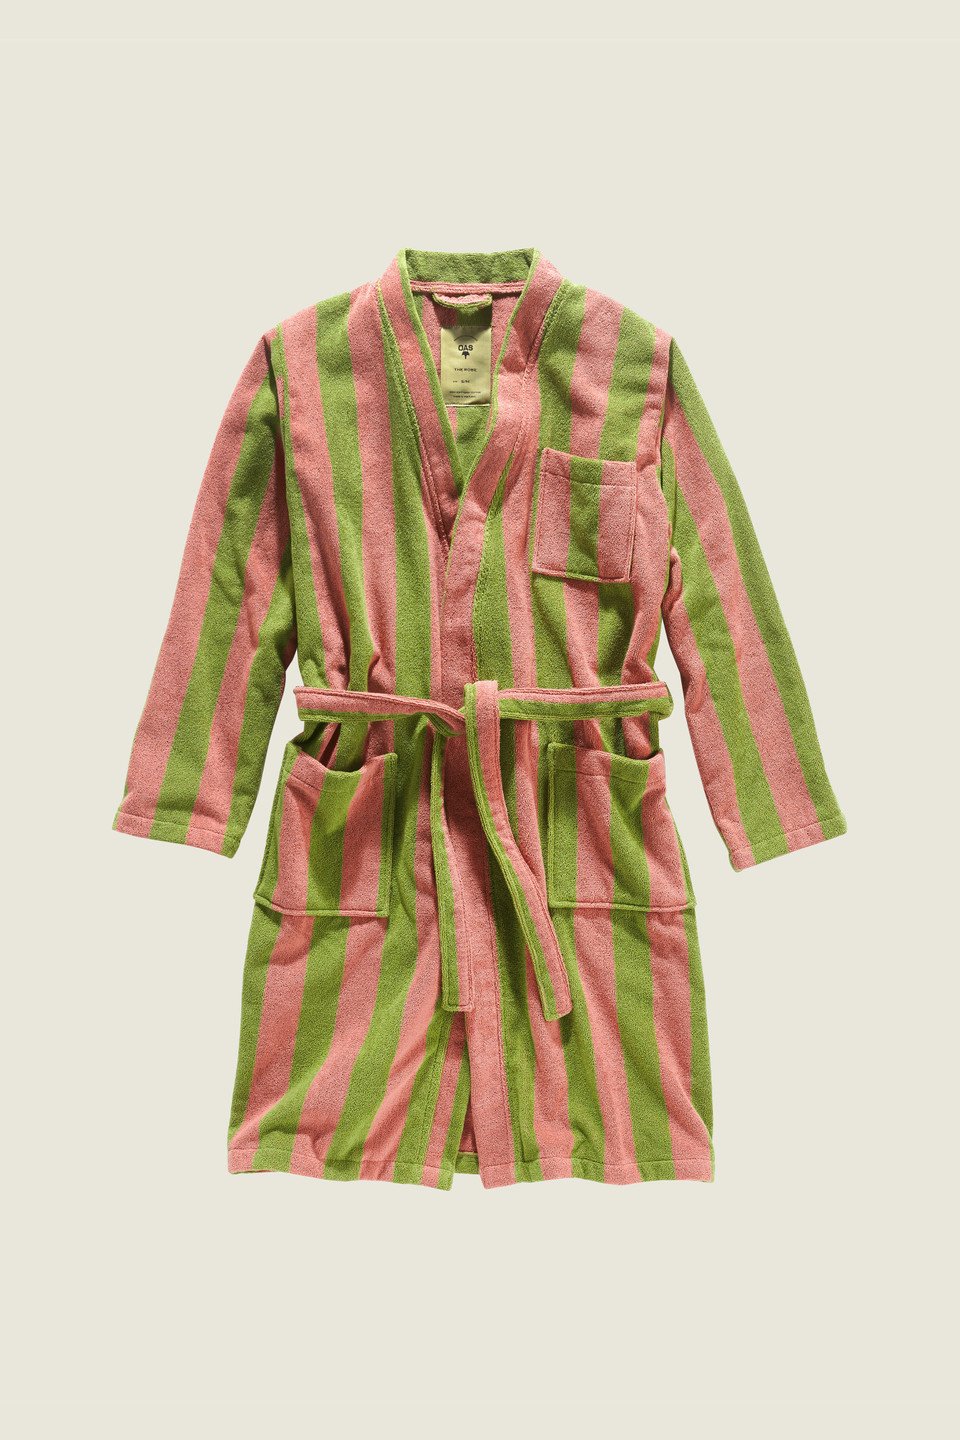 Robes for women - Buy bathrobes for women online | OAS